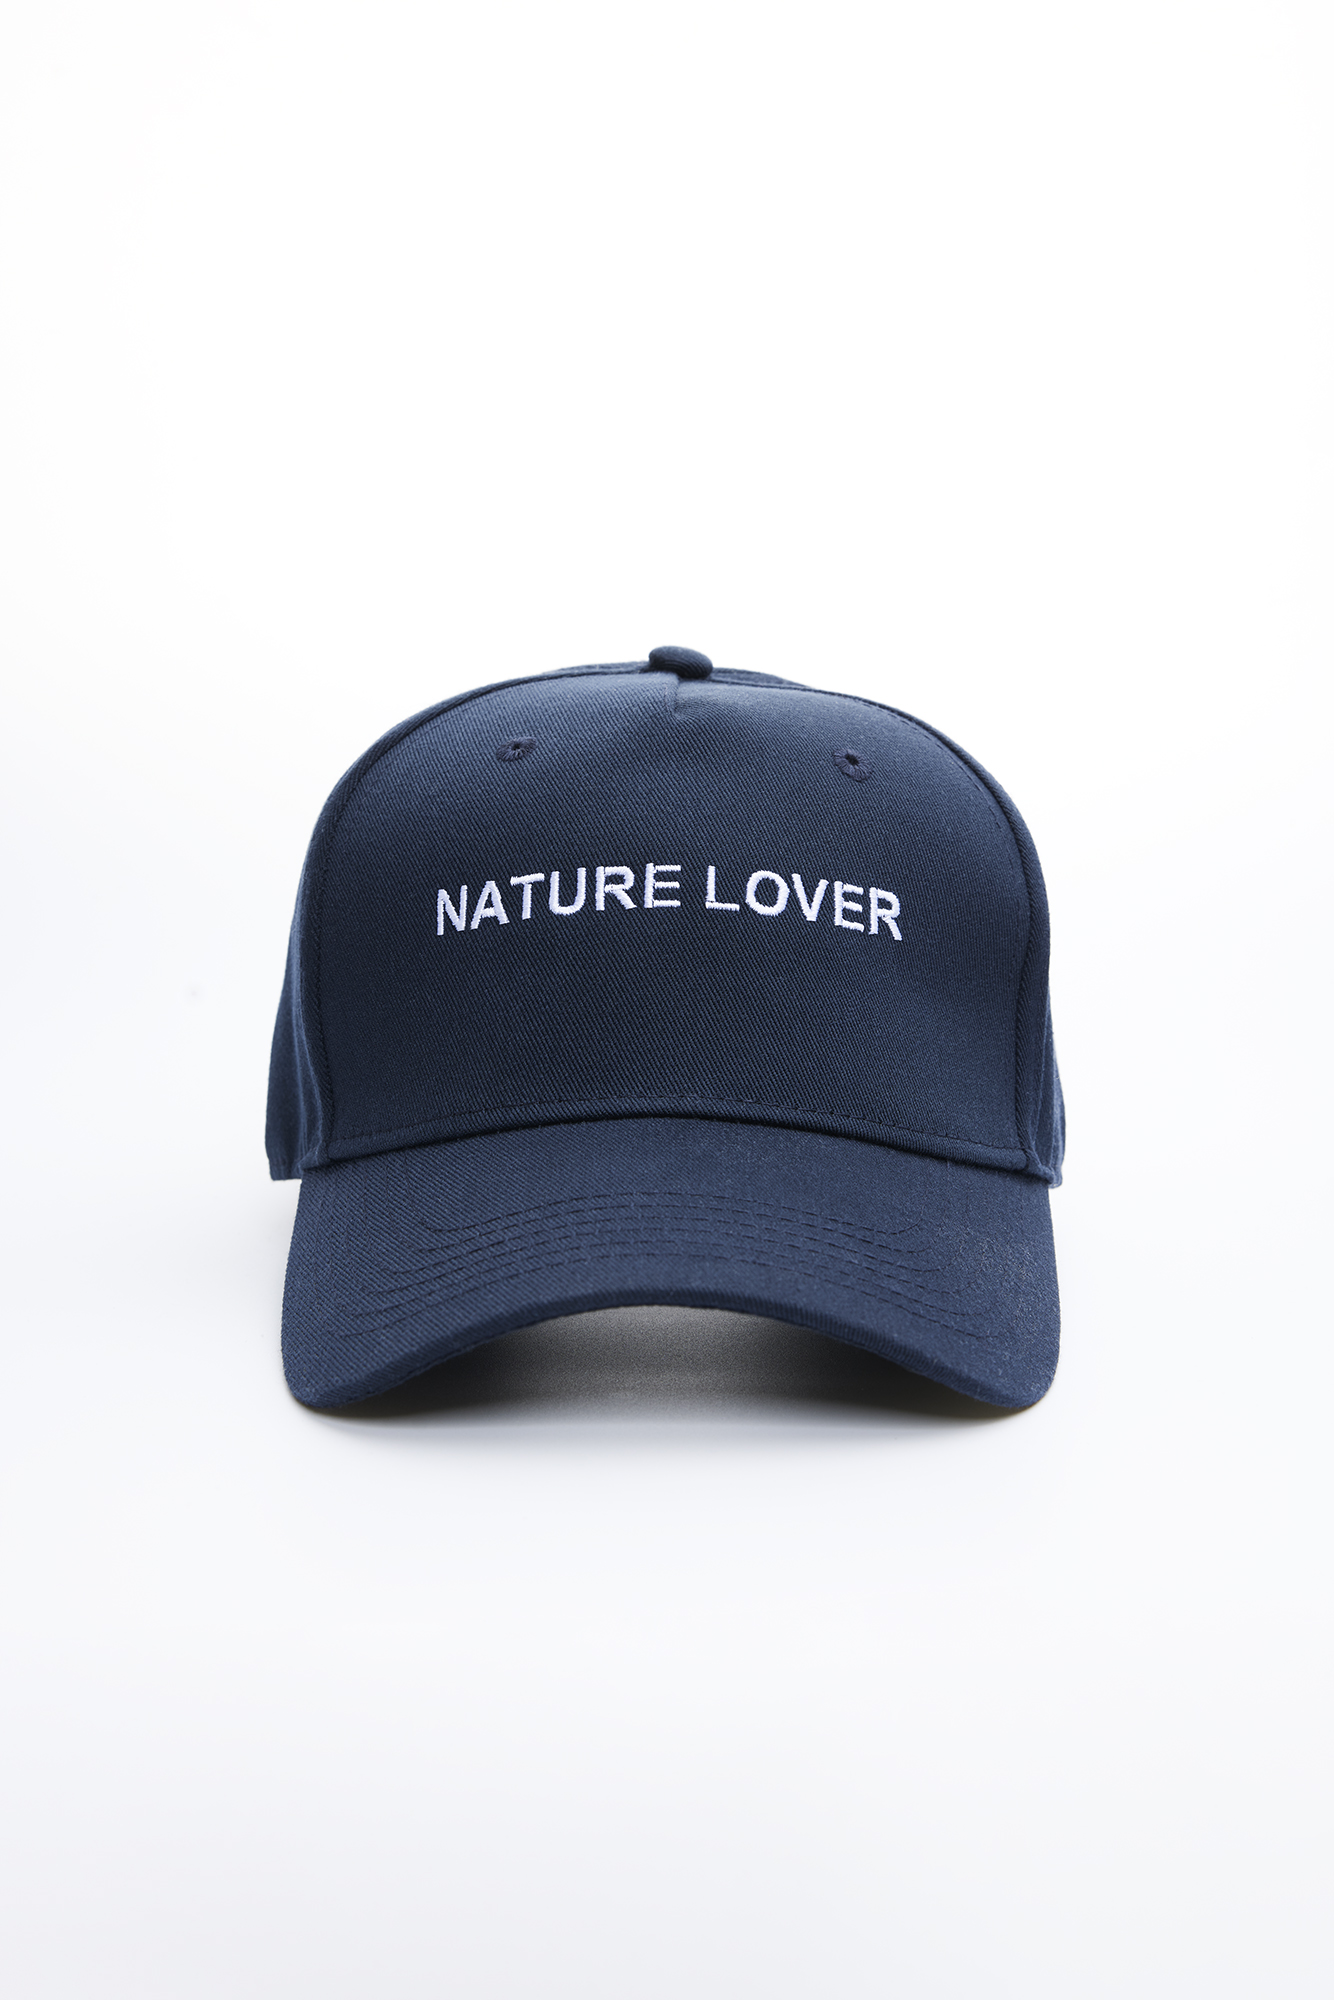 Casquette « Nature Lover » (Couleur Bleu Pêche)